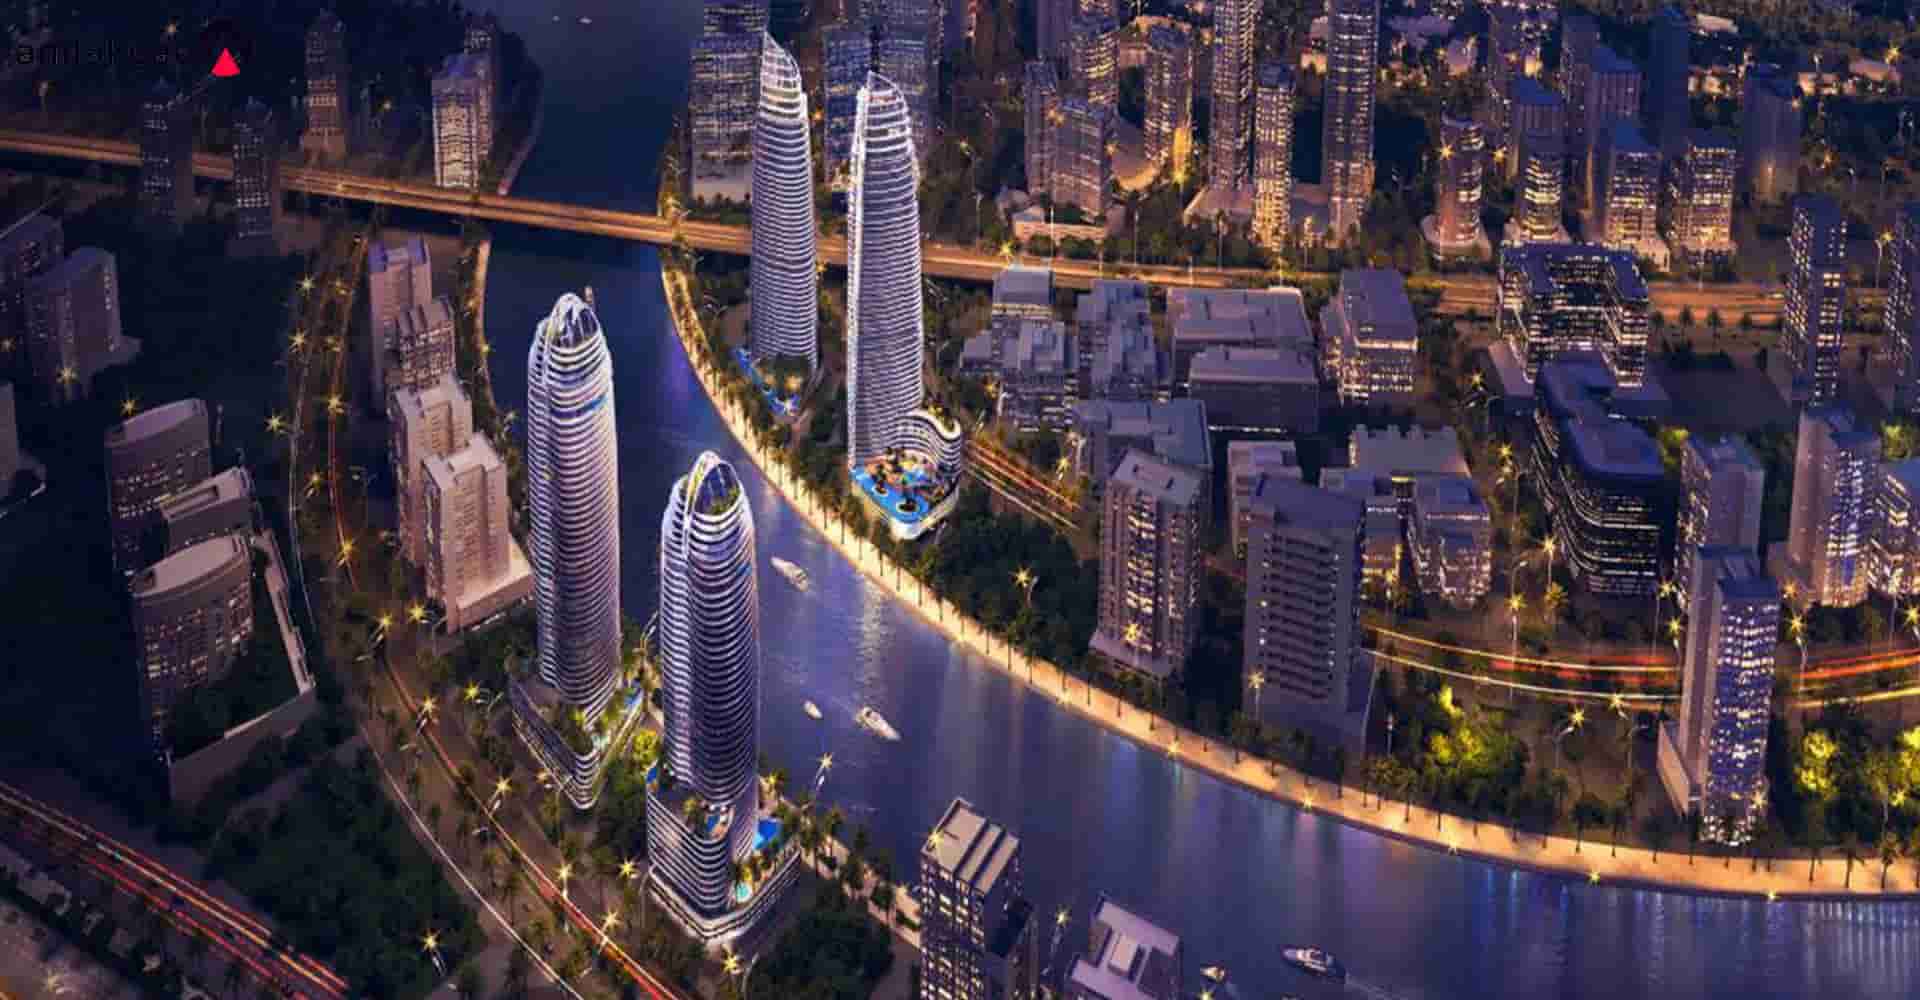 کانال آبی دبی و برج مسکونی داماک التیتود